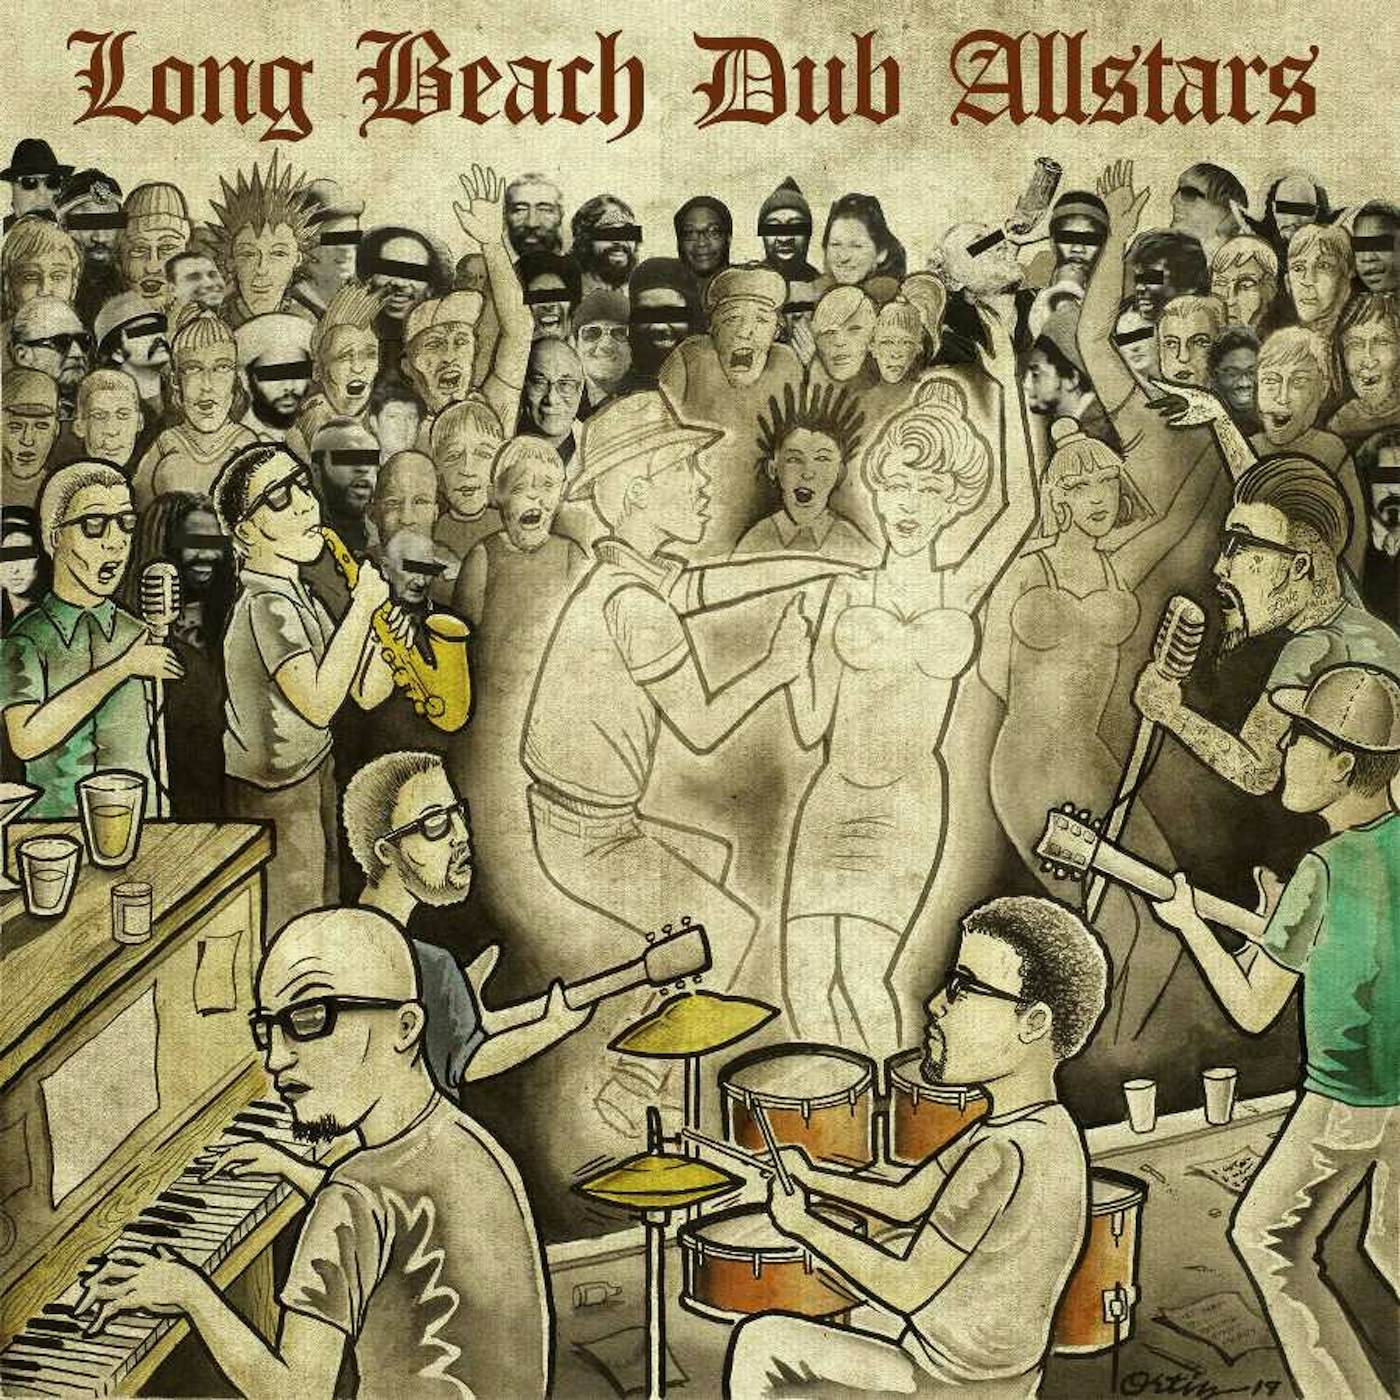 LONG BEACH DUB ALLSTARS CD